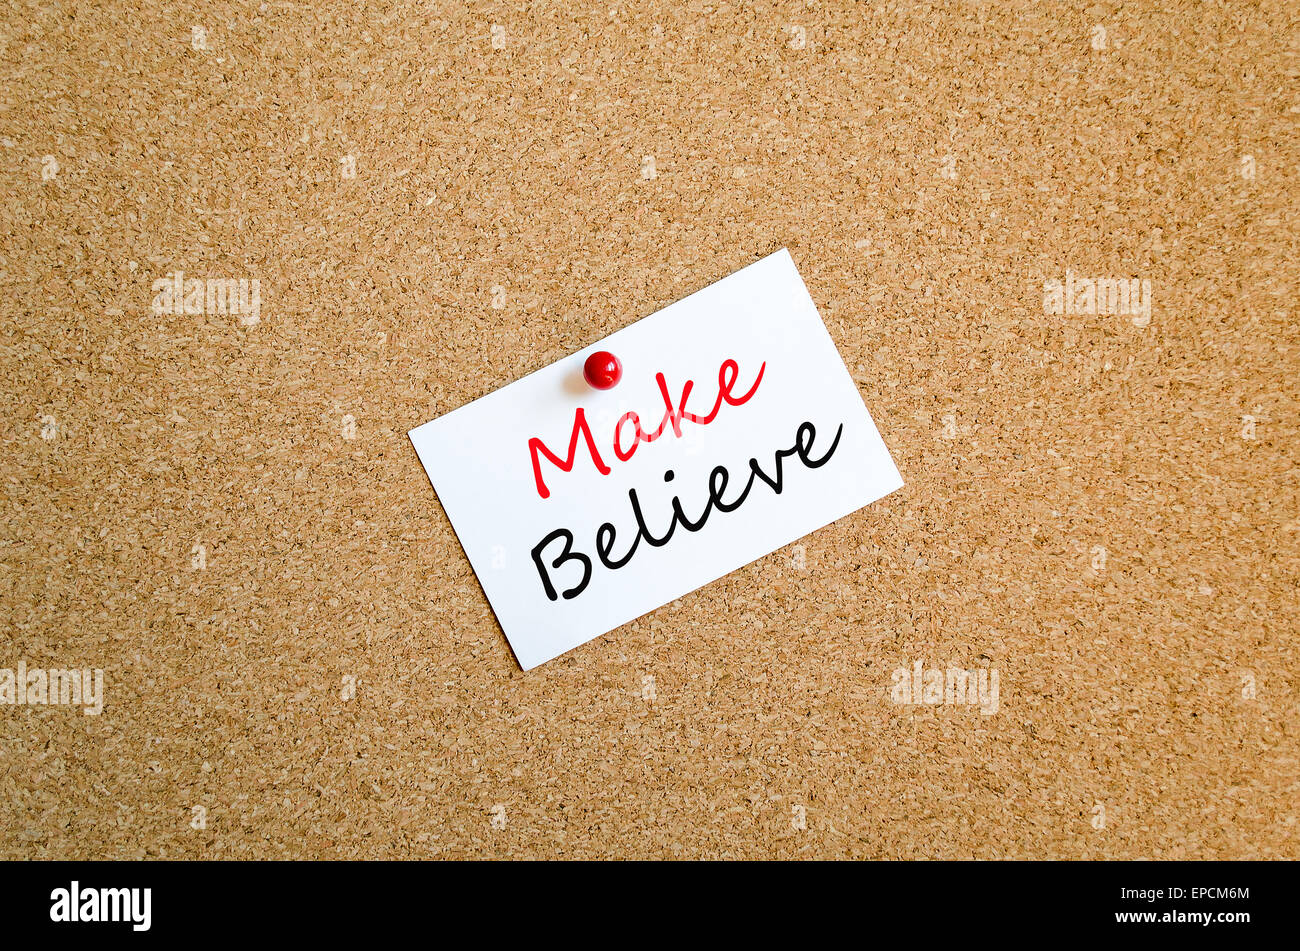 Sticky Note On Cork Board Background Make believe concept Stock Photo